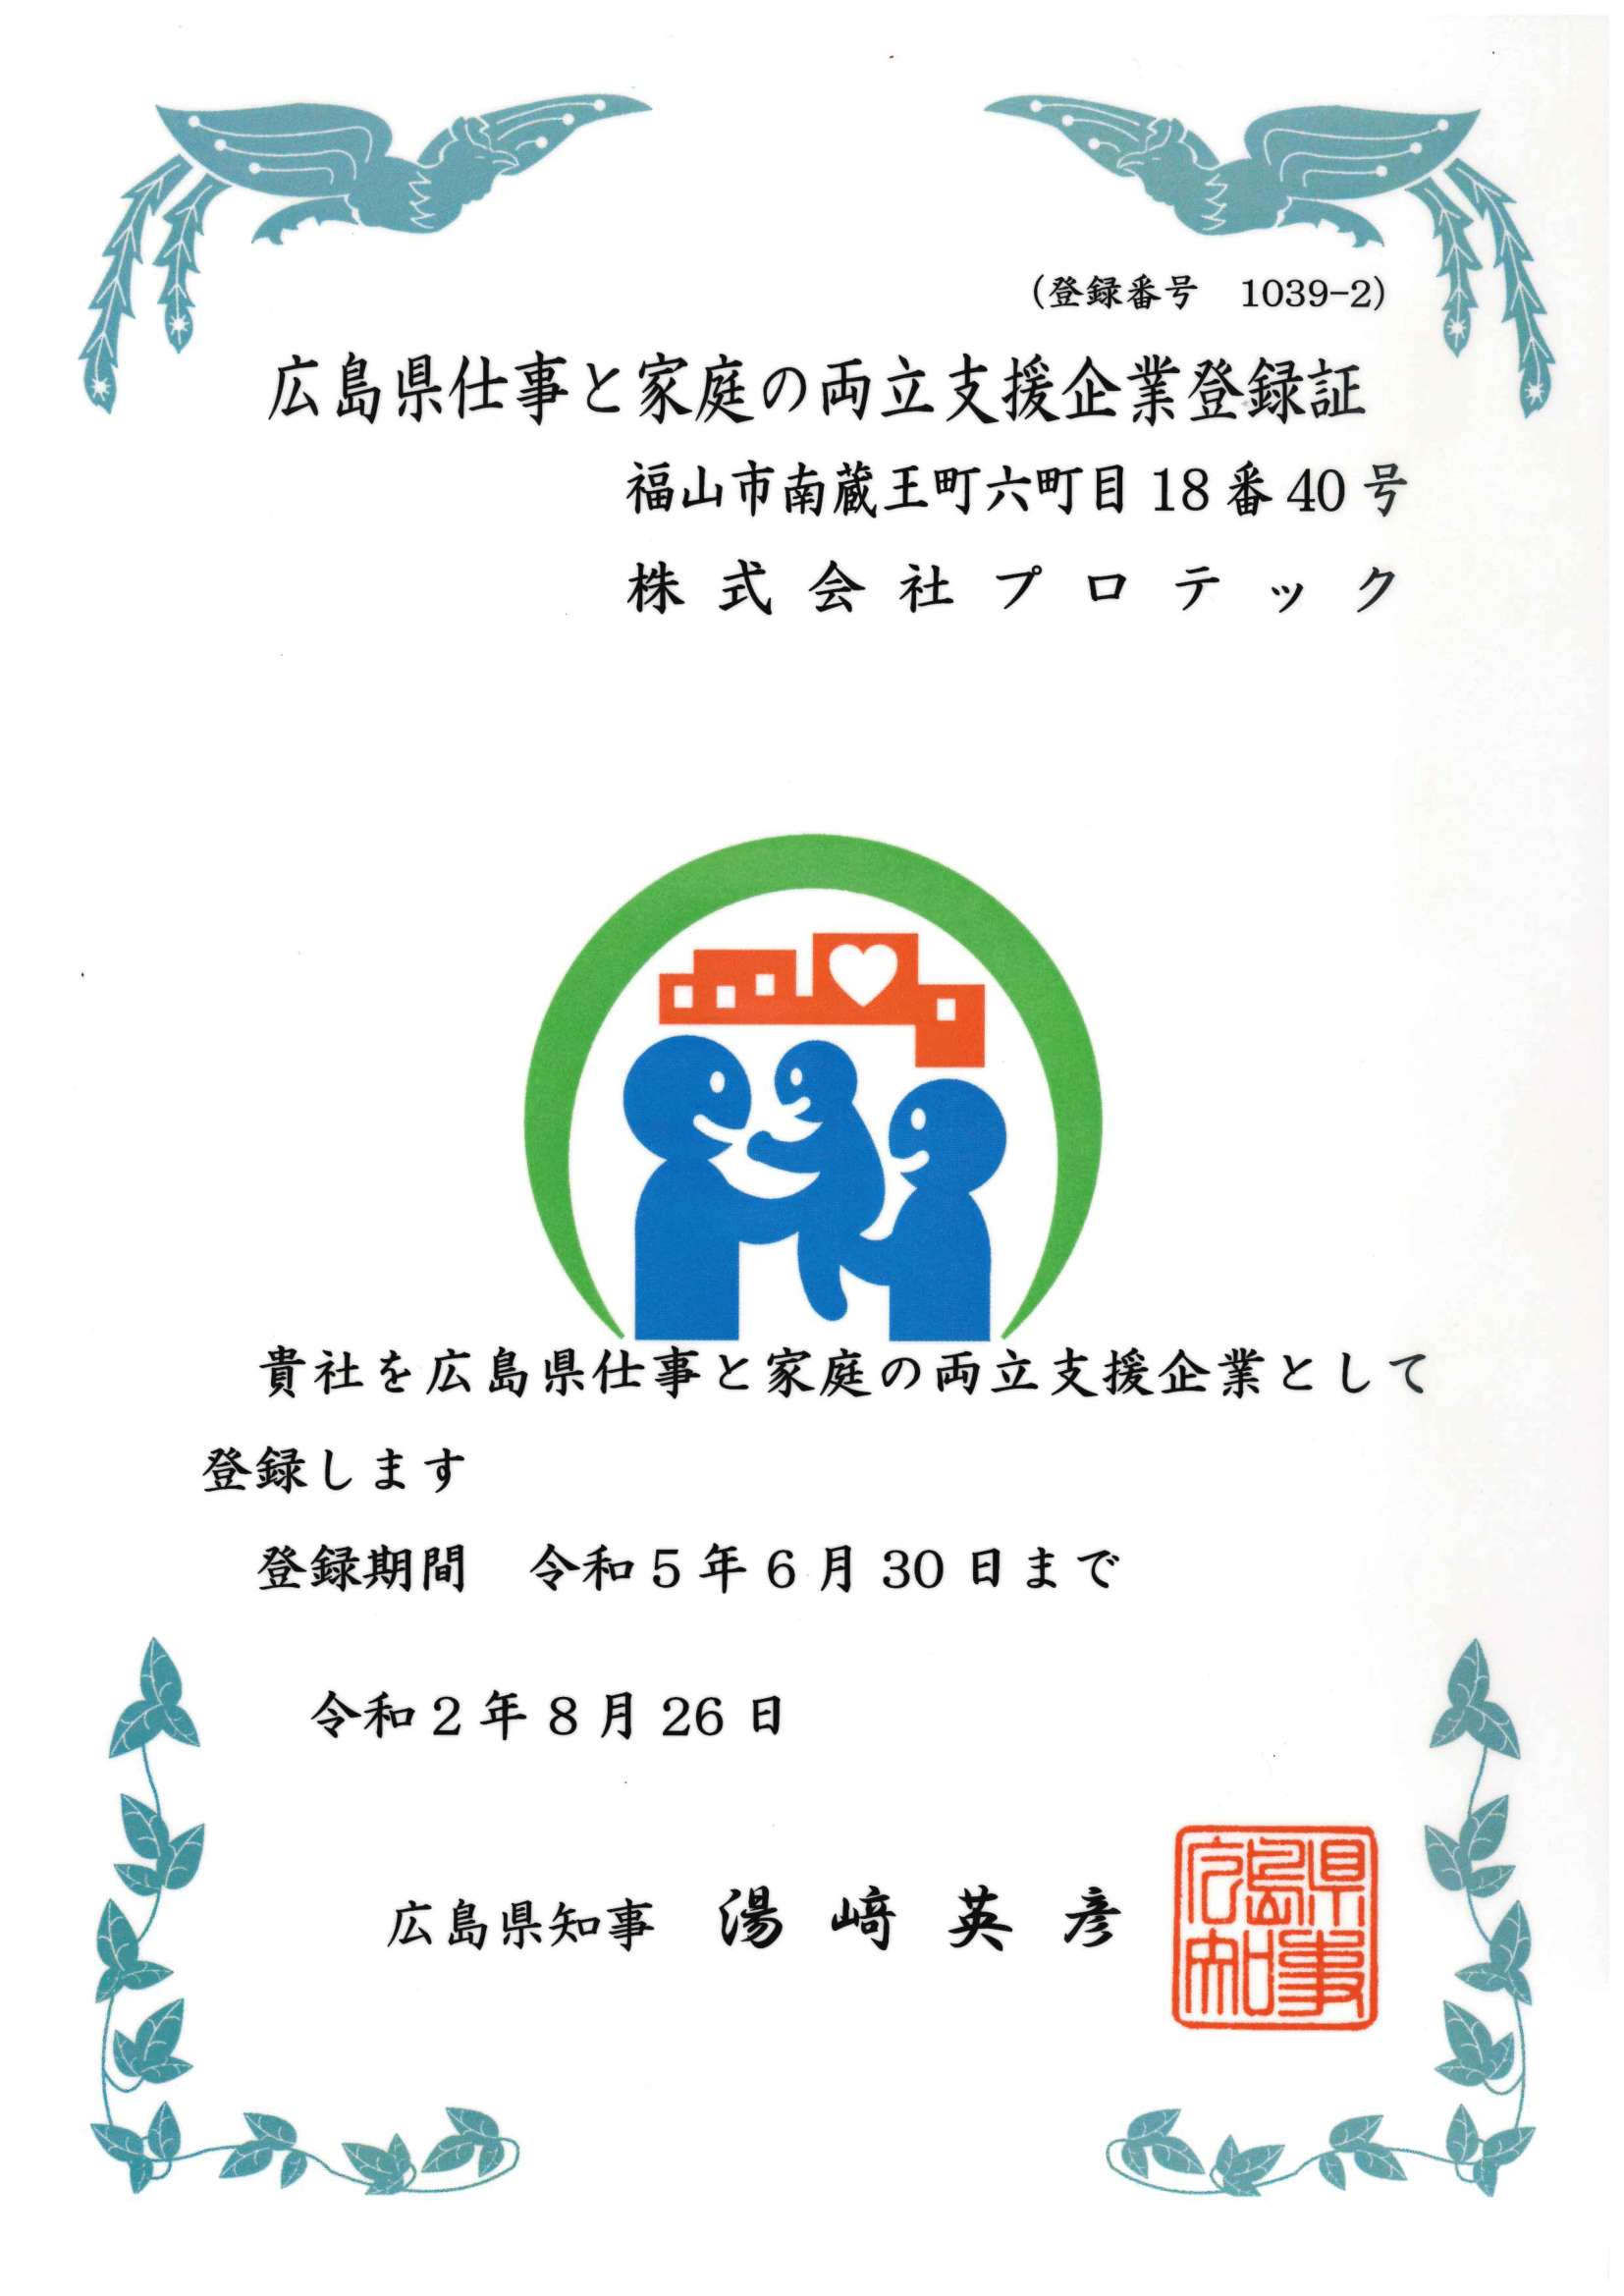 広島県仕事と家庭の両立支援登録企業